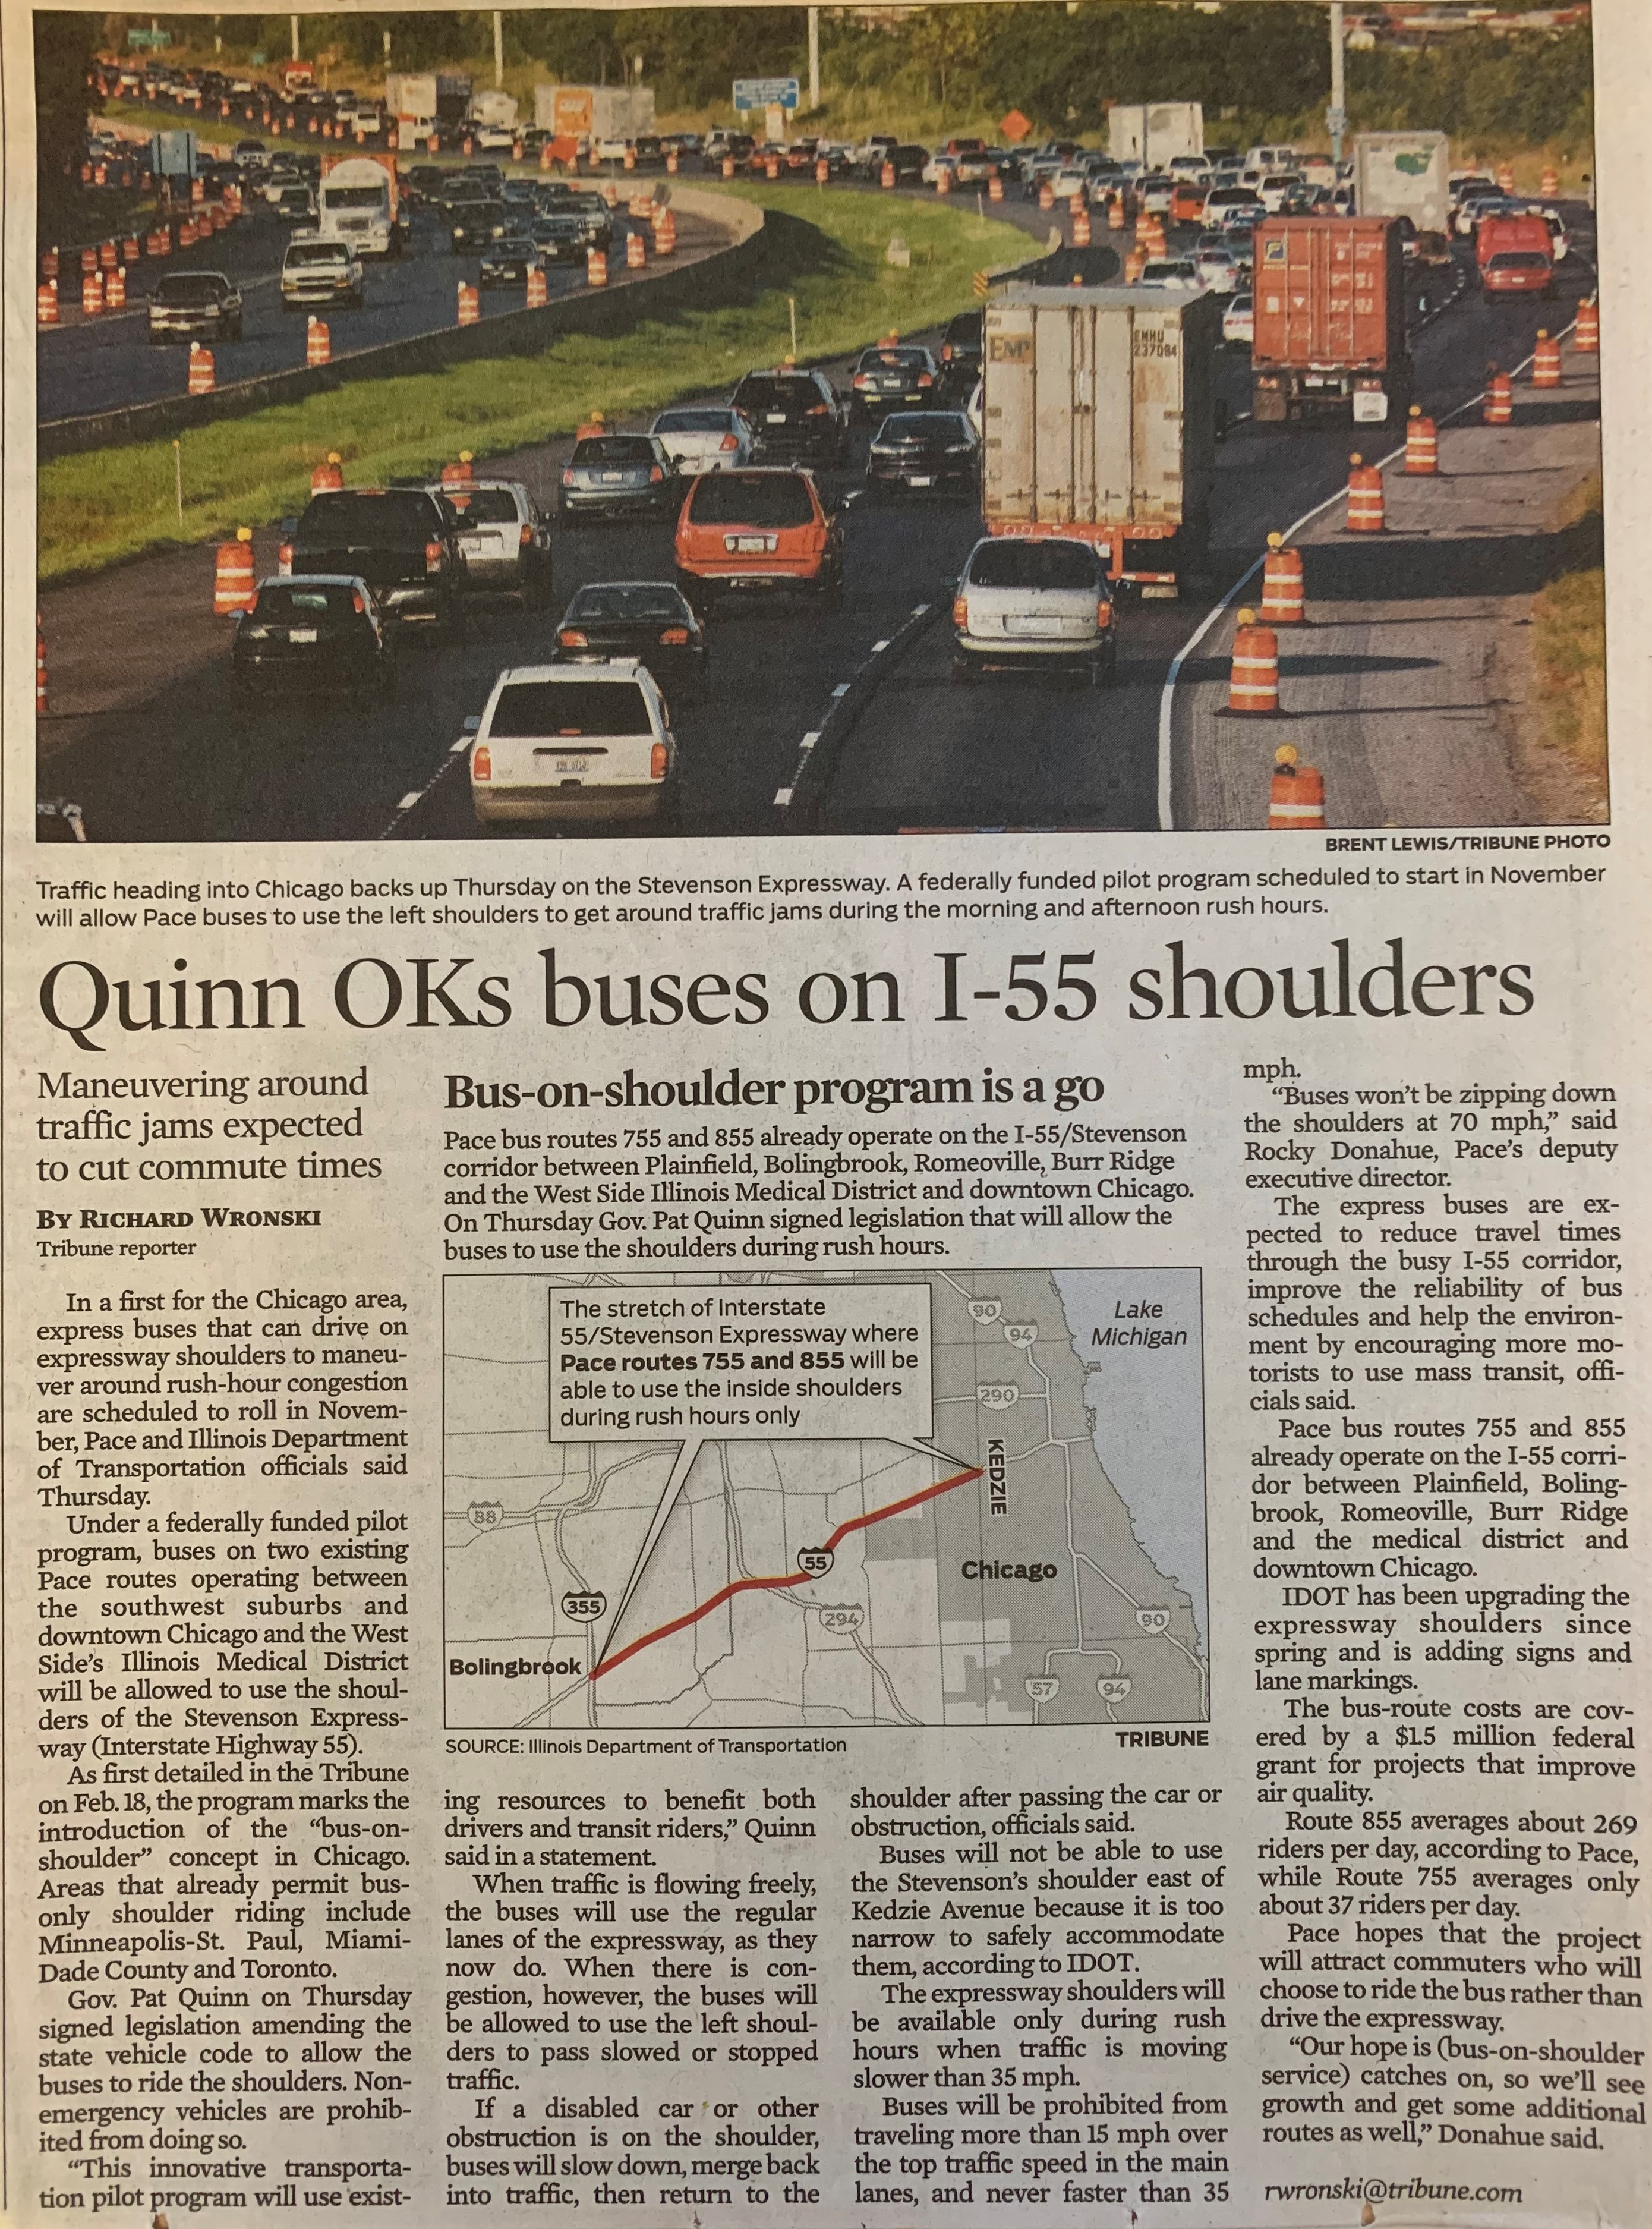 Chicago Tribune October 2011 bus-on-shoulder article